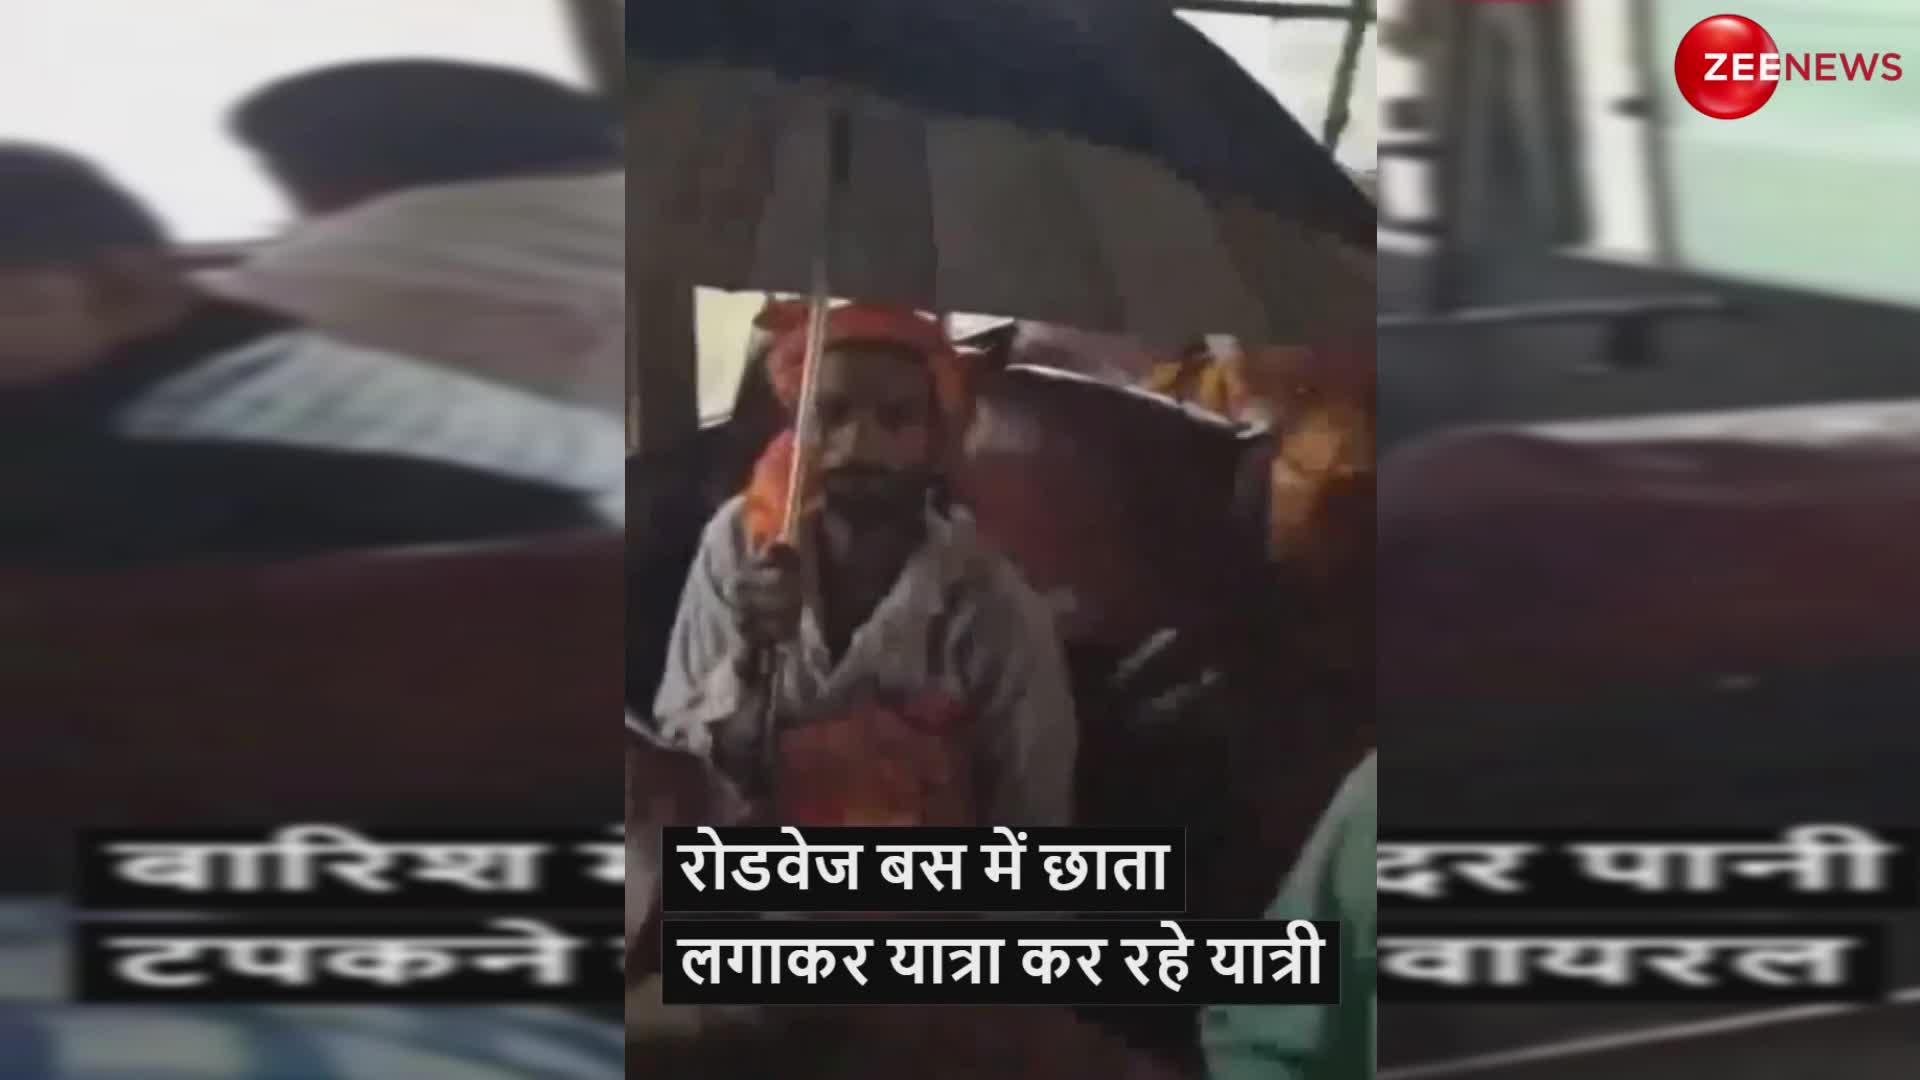 बस के अंदर भी बारिश! छाता लगाकर यात्रा कर रहे लोग, रोडवेज बस का वीडियो हुआ वायरल